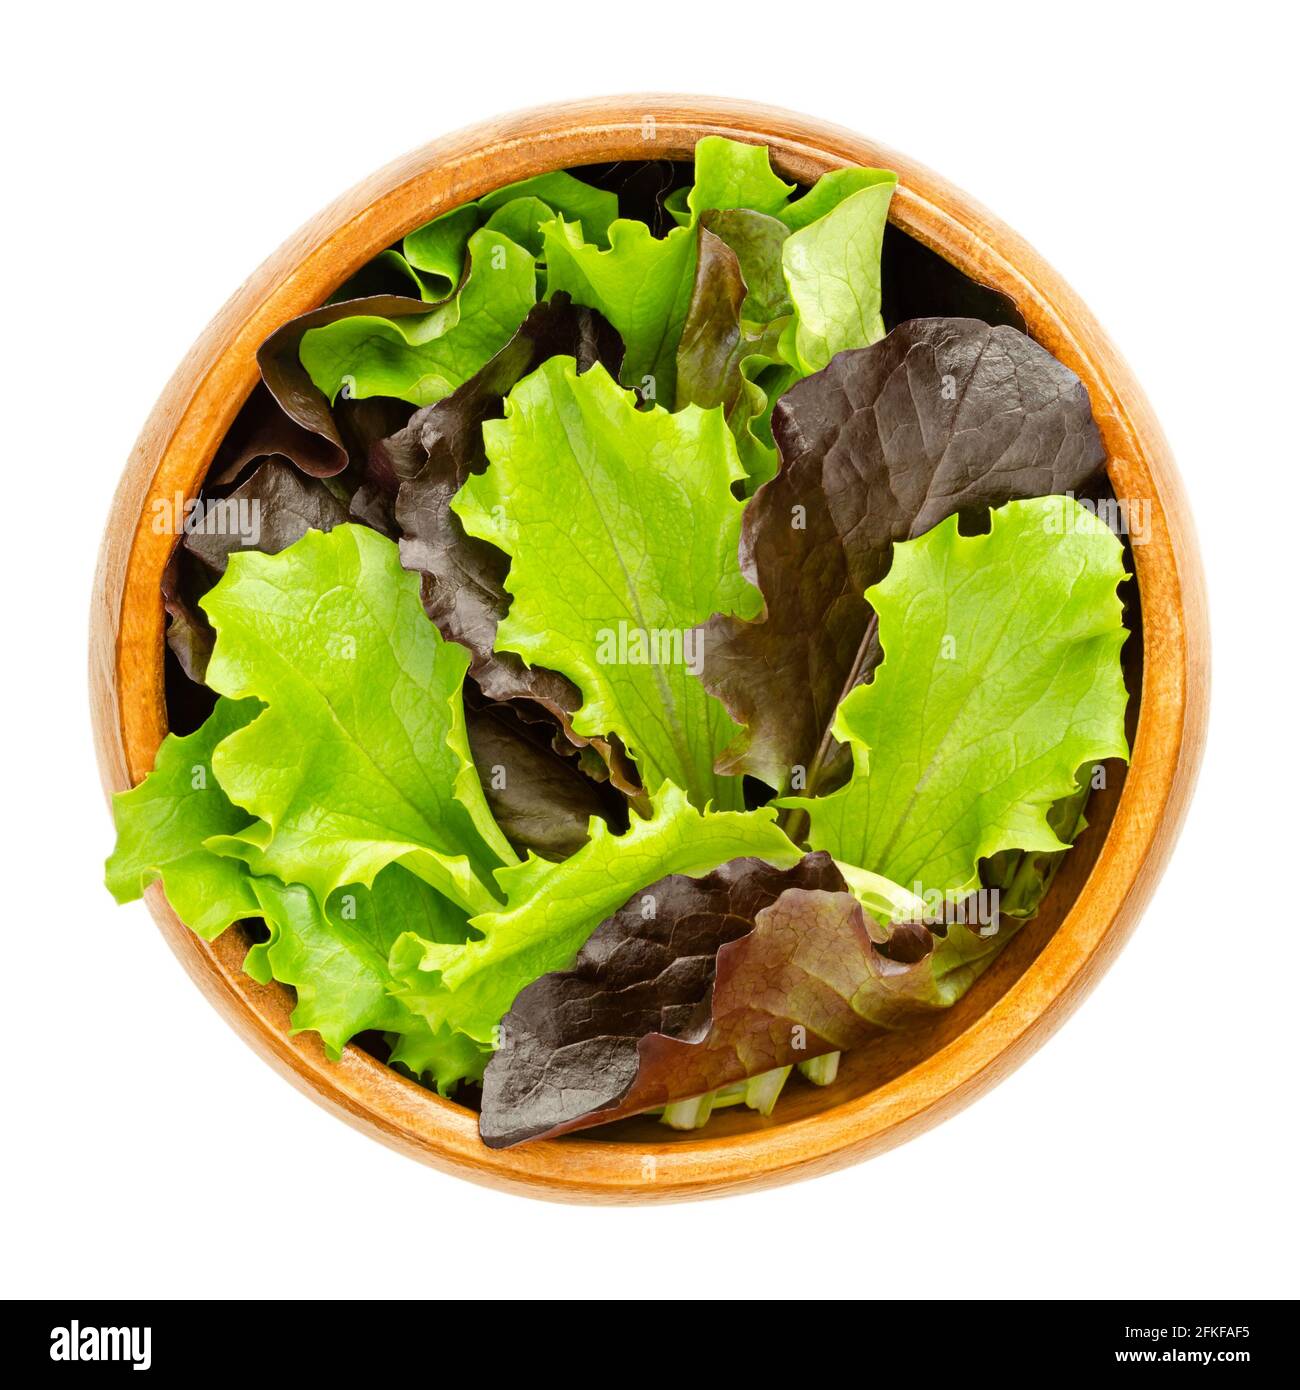 Lockerer Blattsalat in einer Holzschüssel. Frisch gepflückte grüne und rote  Blätter von Zuckergalat, auch Pflücken- oder Looseleaf-Salat. Roh,  biologisch, vegan Stockfotografie - Alamy